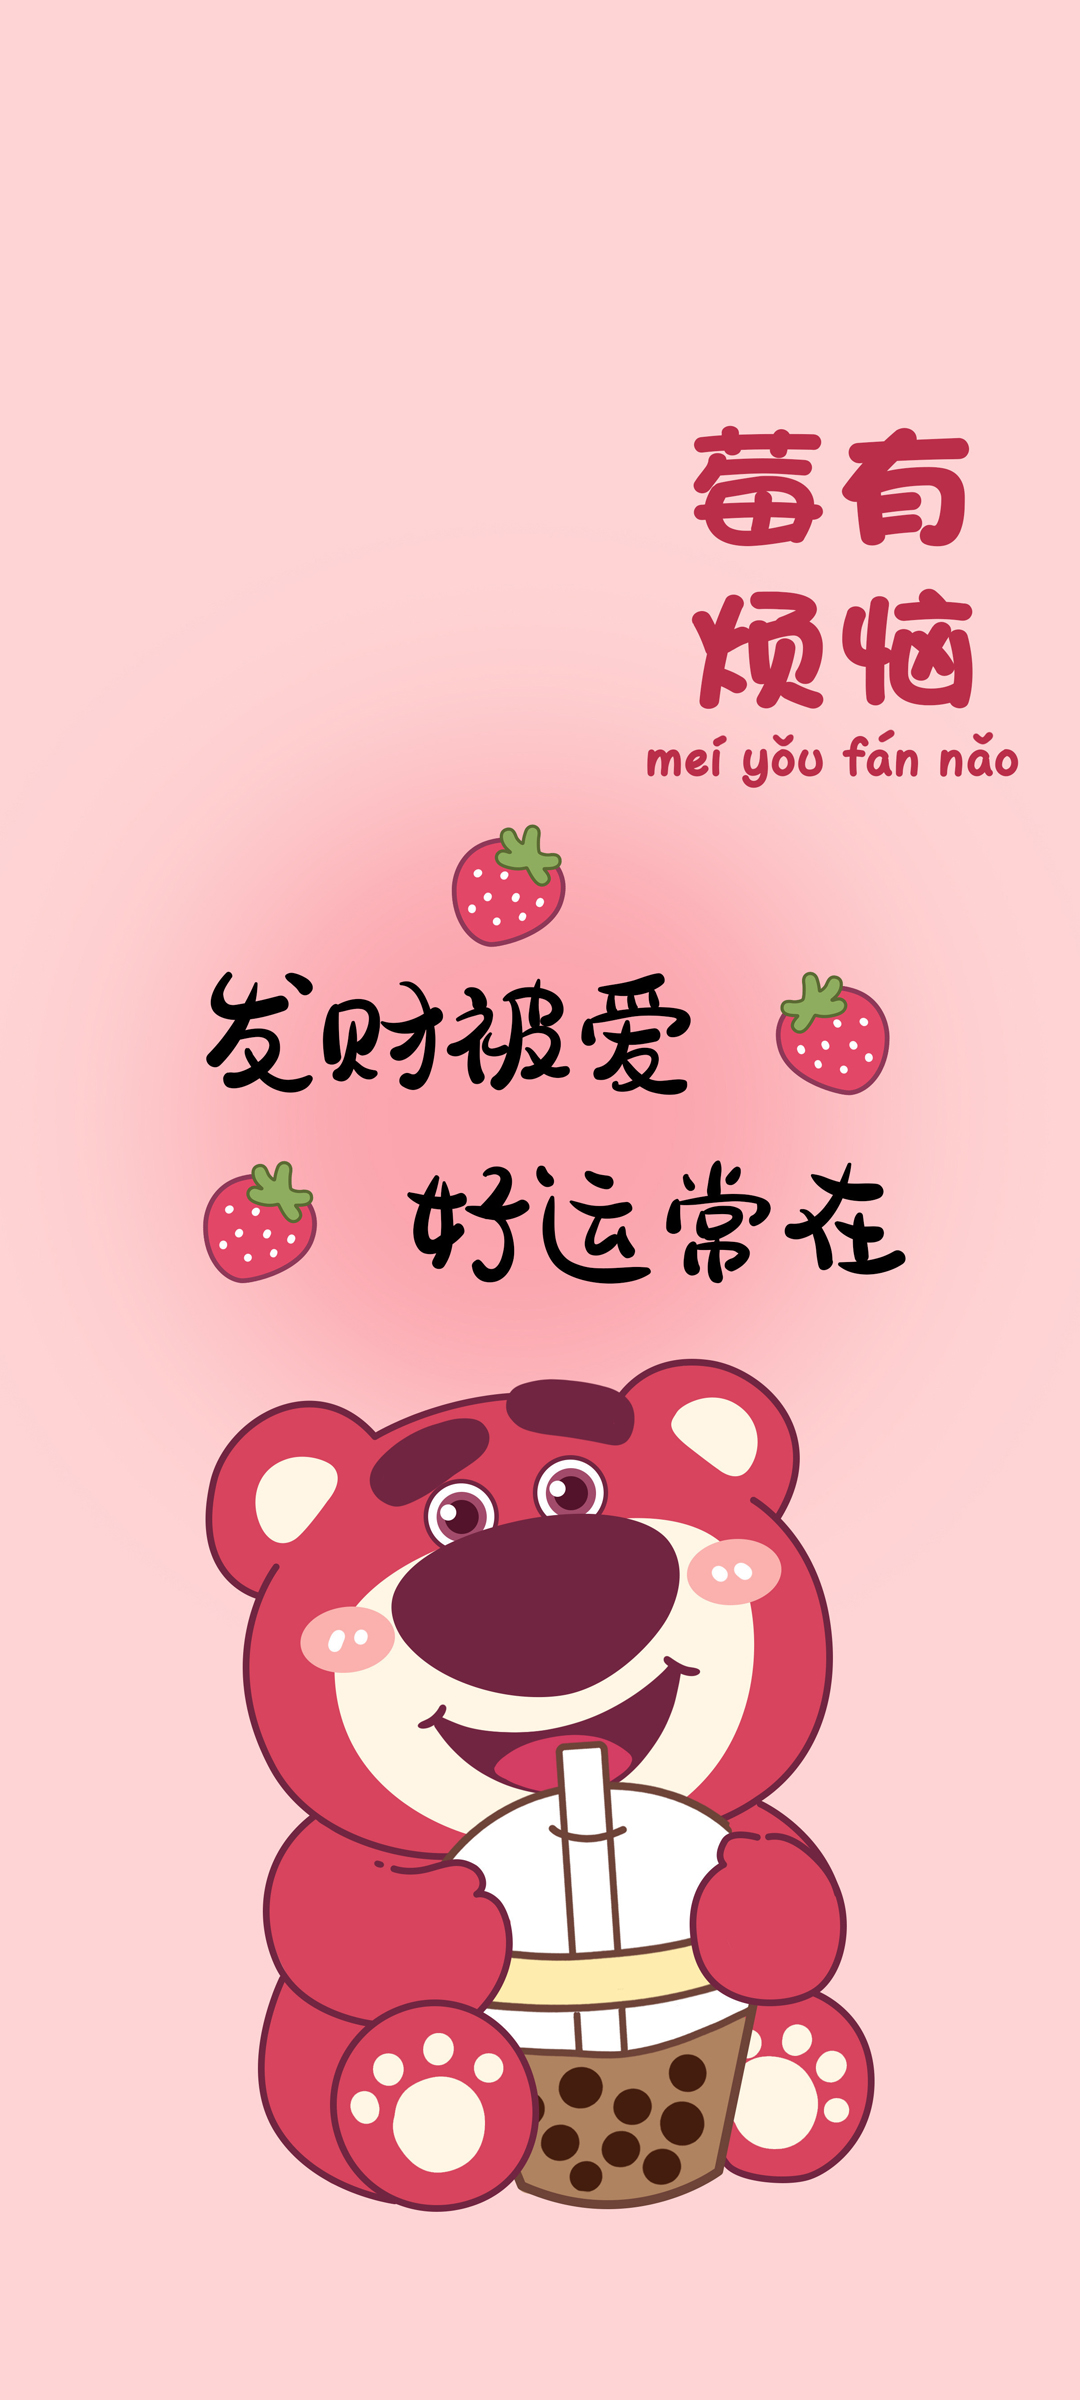 草莓熊 好运常在 手机壁纸